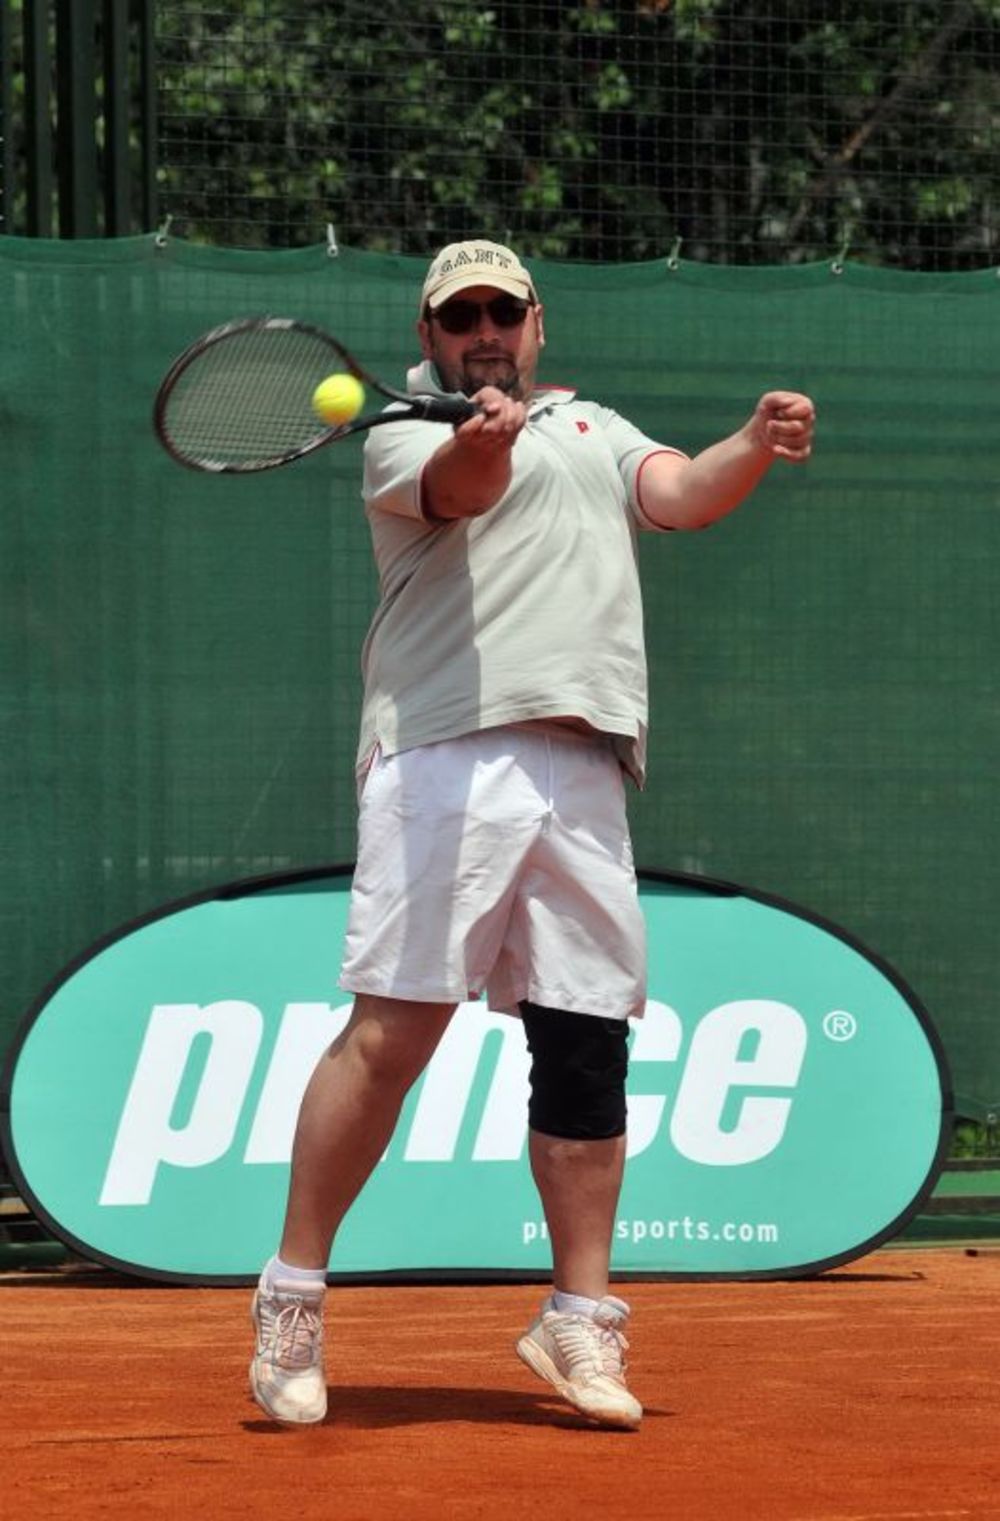 Treći teniski challenger turnir poznatih ličnosti Doncafe Celebrities Challenger Belgrade 2010 održan je 12. i 13. juna u klubu Colonial Sun u Beogradu